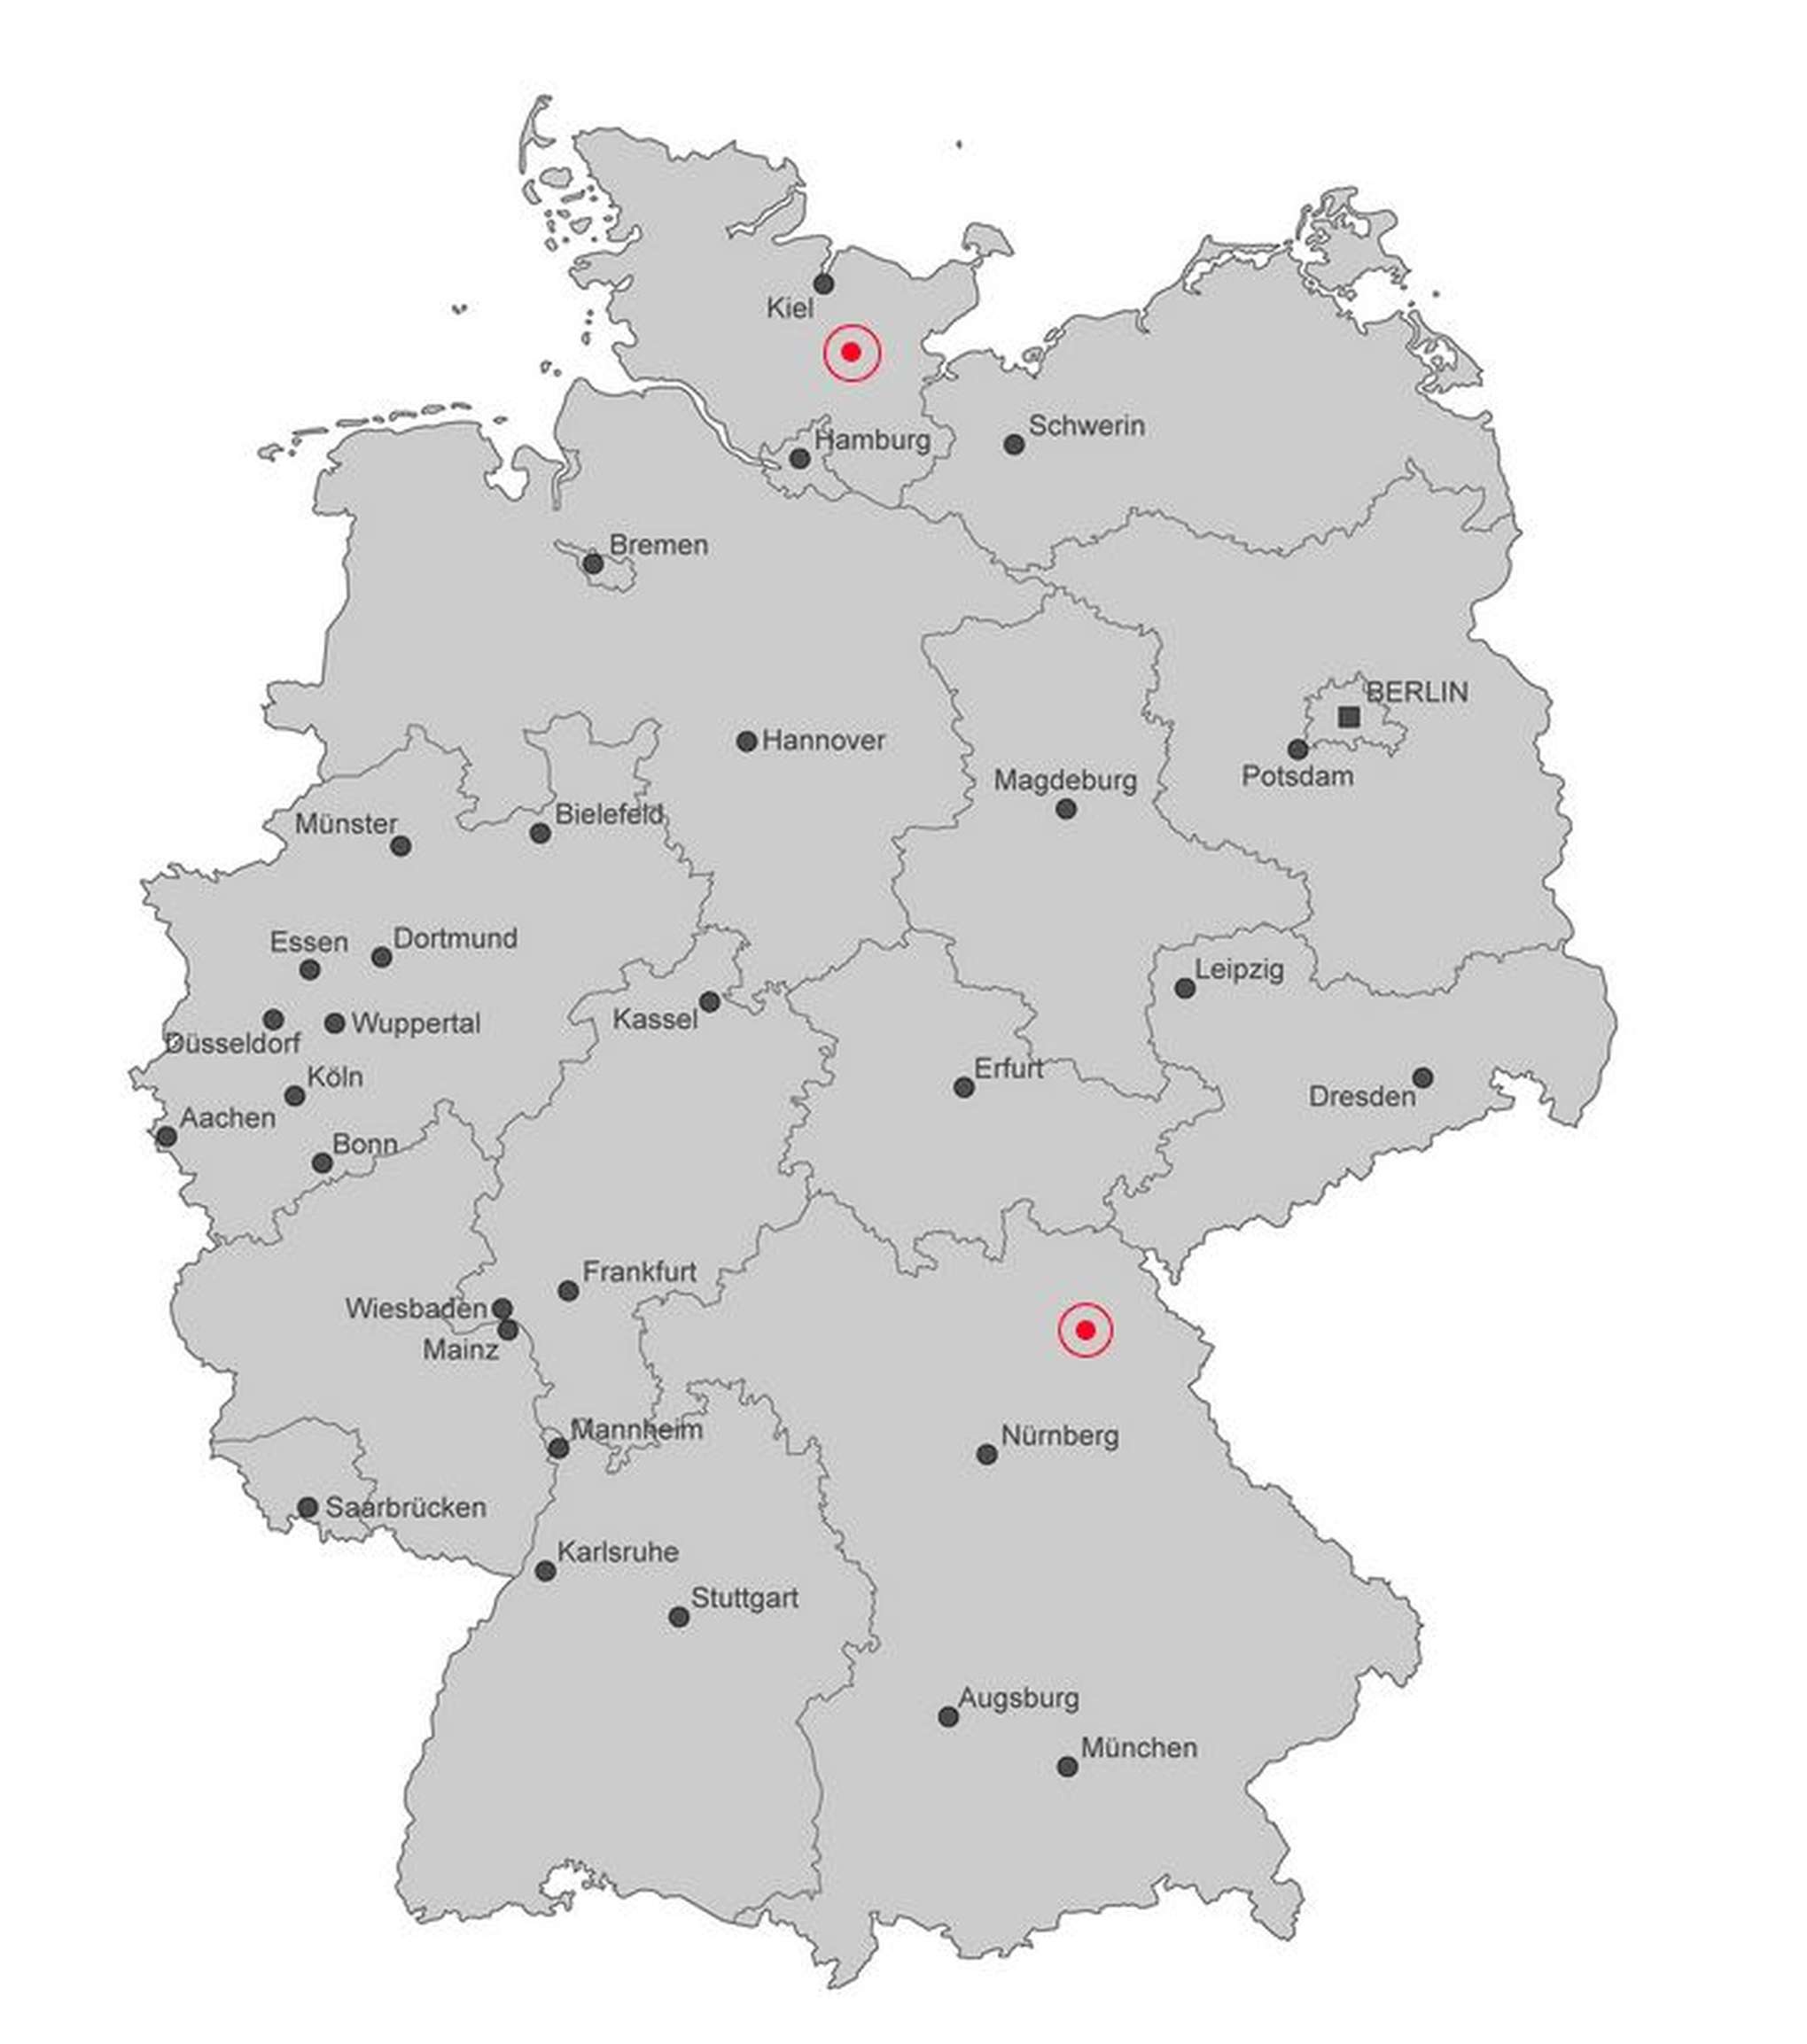 Ганновер на карте. Контурная карта Германии с основными городами. Аугсбург на контурной карте. Германия на карте с землями Манхайм. Столица Германии на контурной карте.